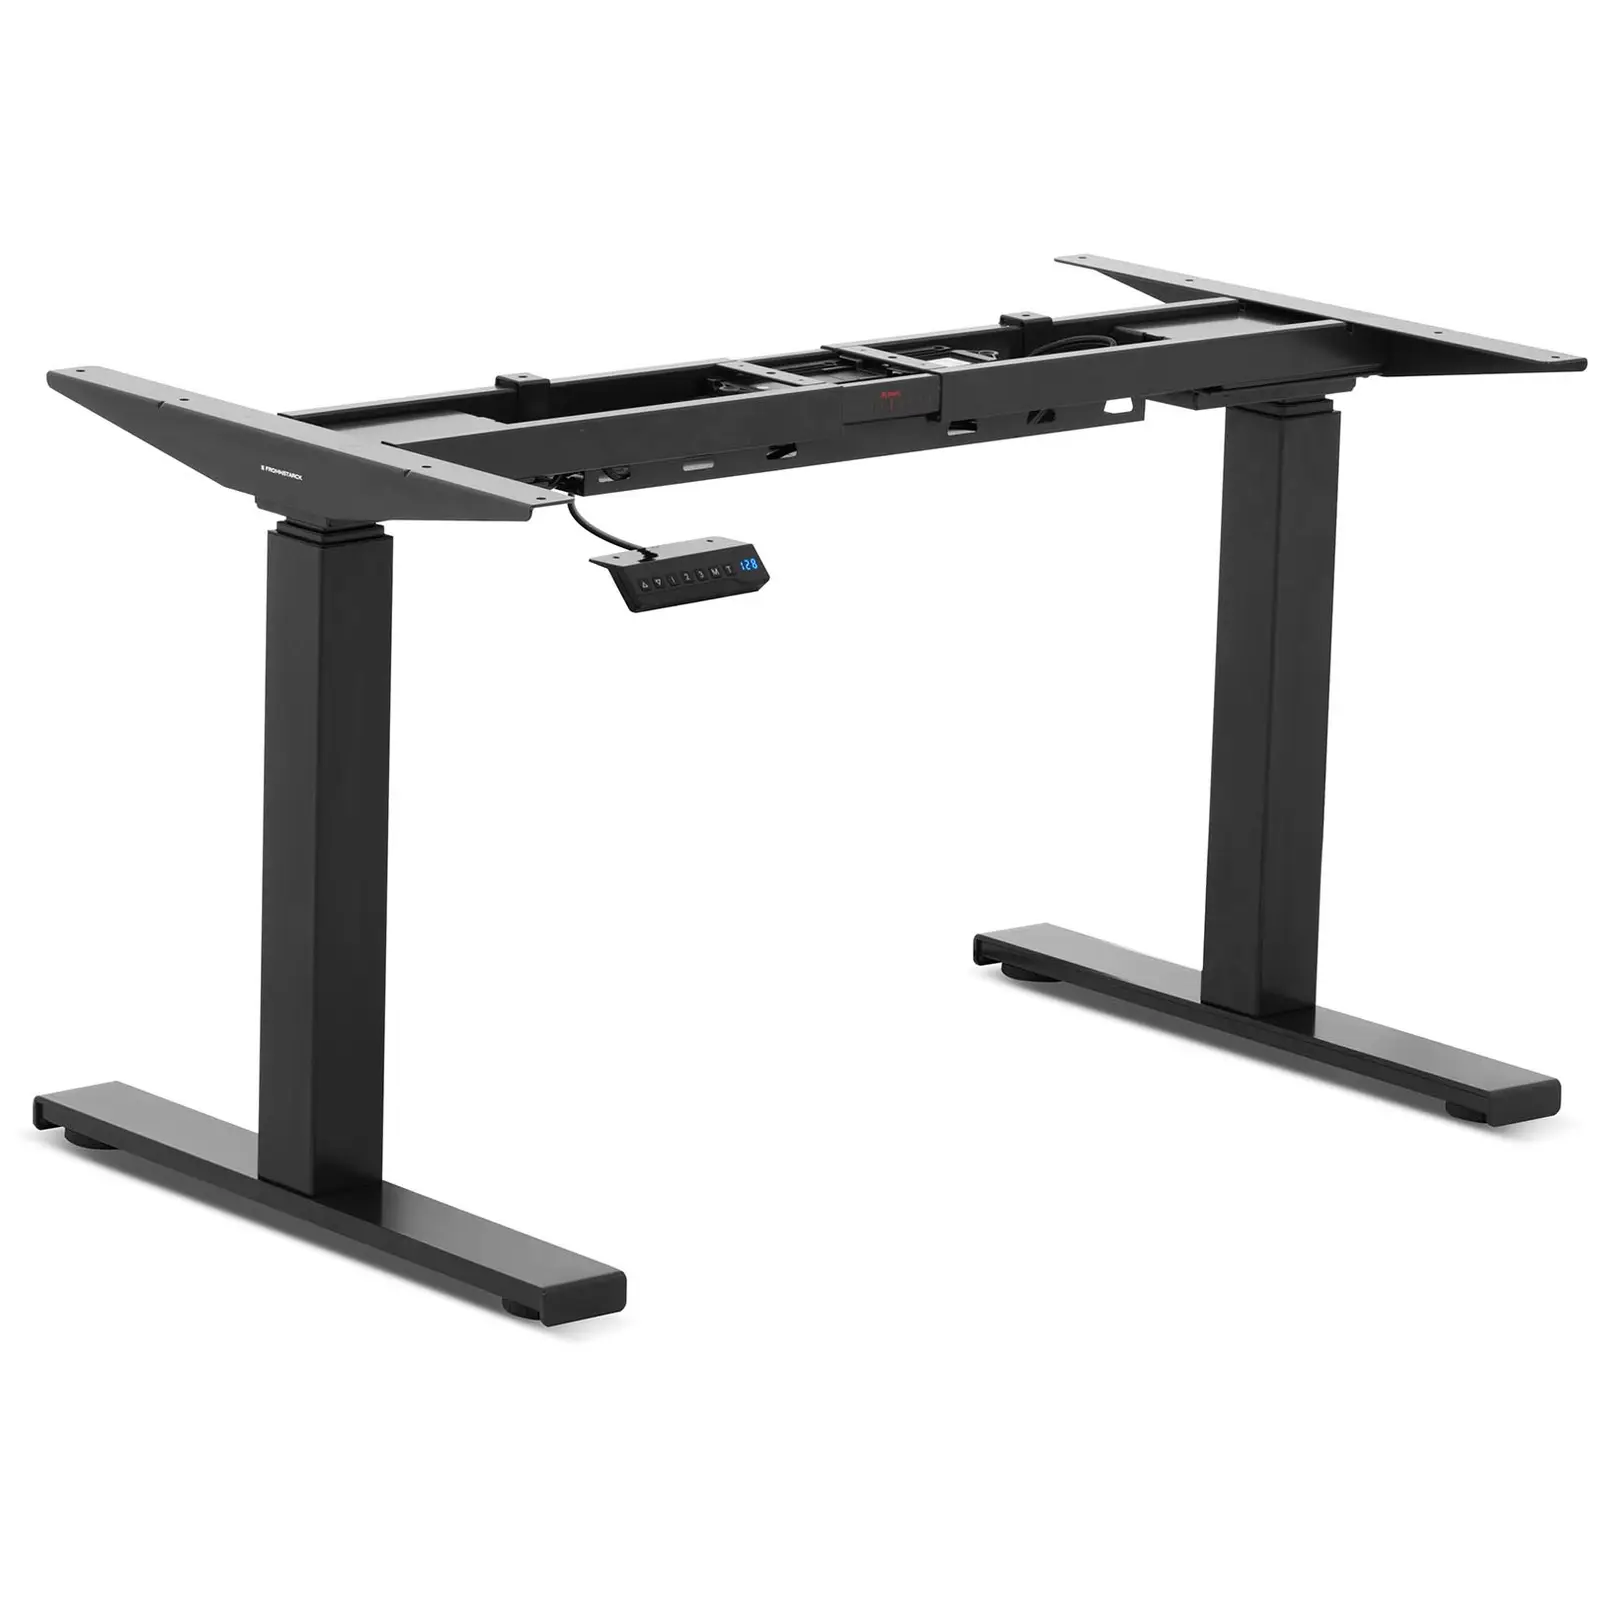 Bastidor para mesa con ajuste de altura - 200 W - 100 kg - negro